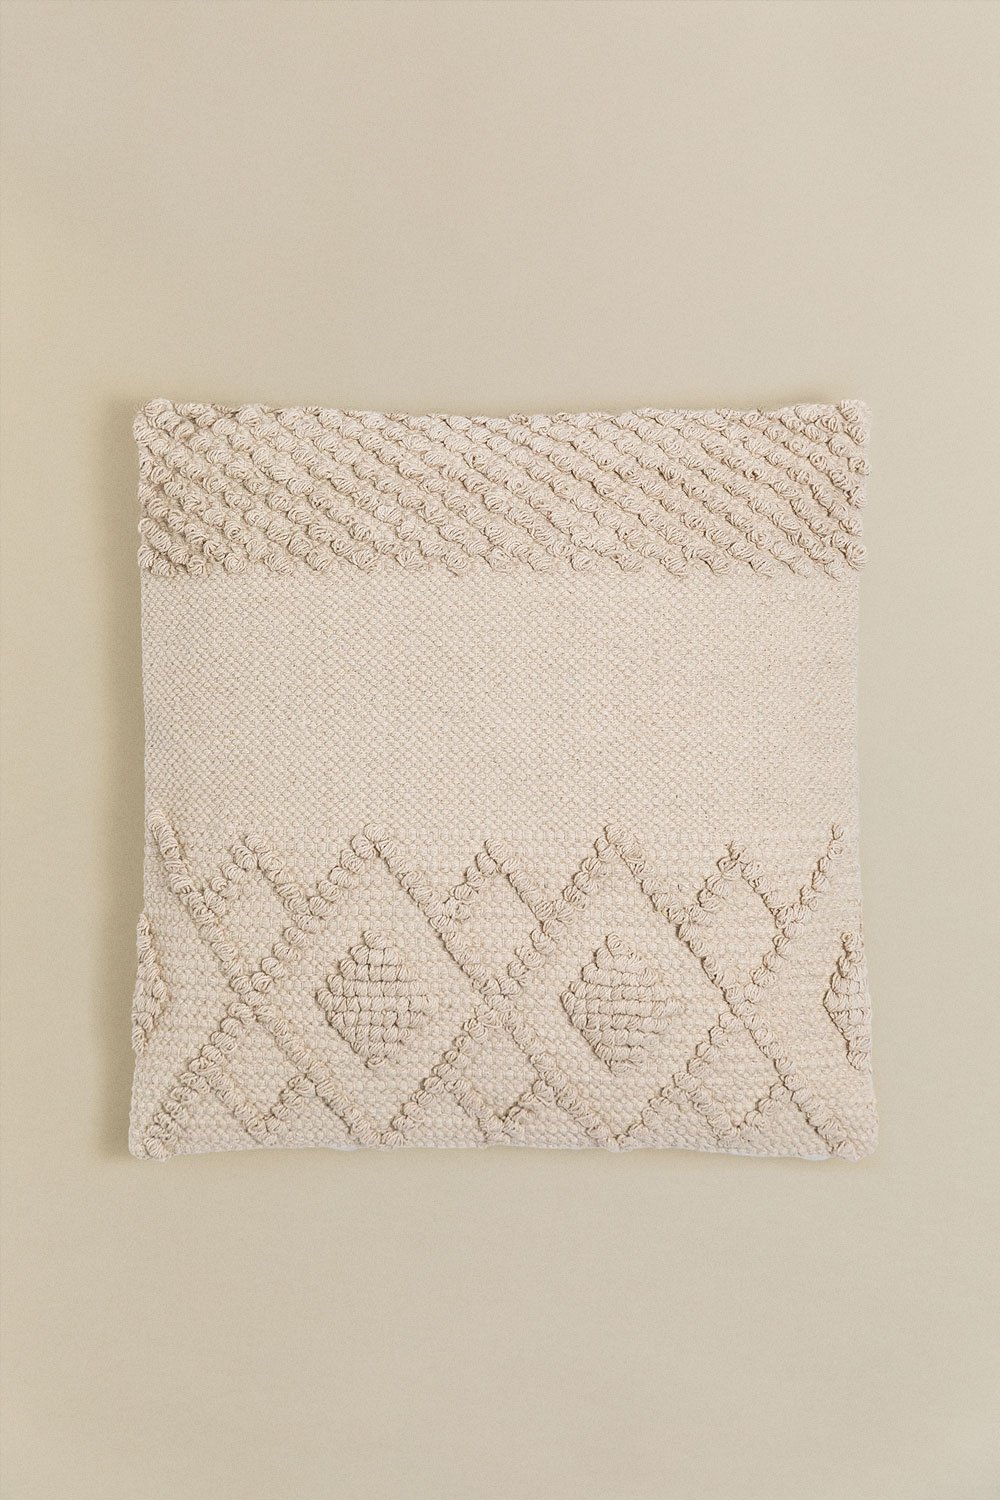 Cuscino Quadrato in Cotone (50x50cm) Gubby, immagine della galleria 1